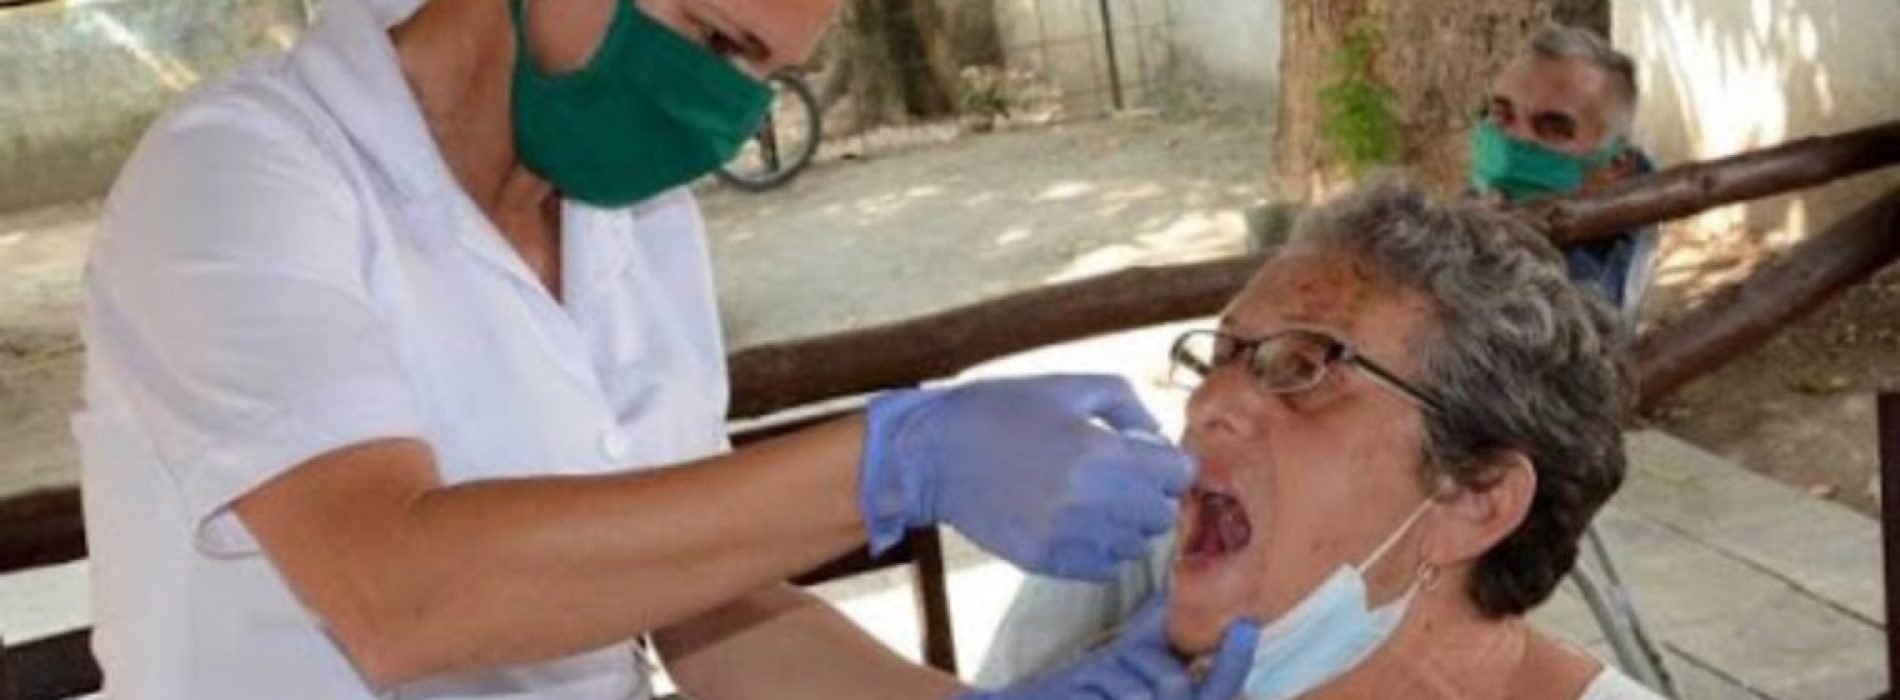 Cuba promoot homeopathische behandeling voor ouderen als effectief wapen tegen het coronavirus